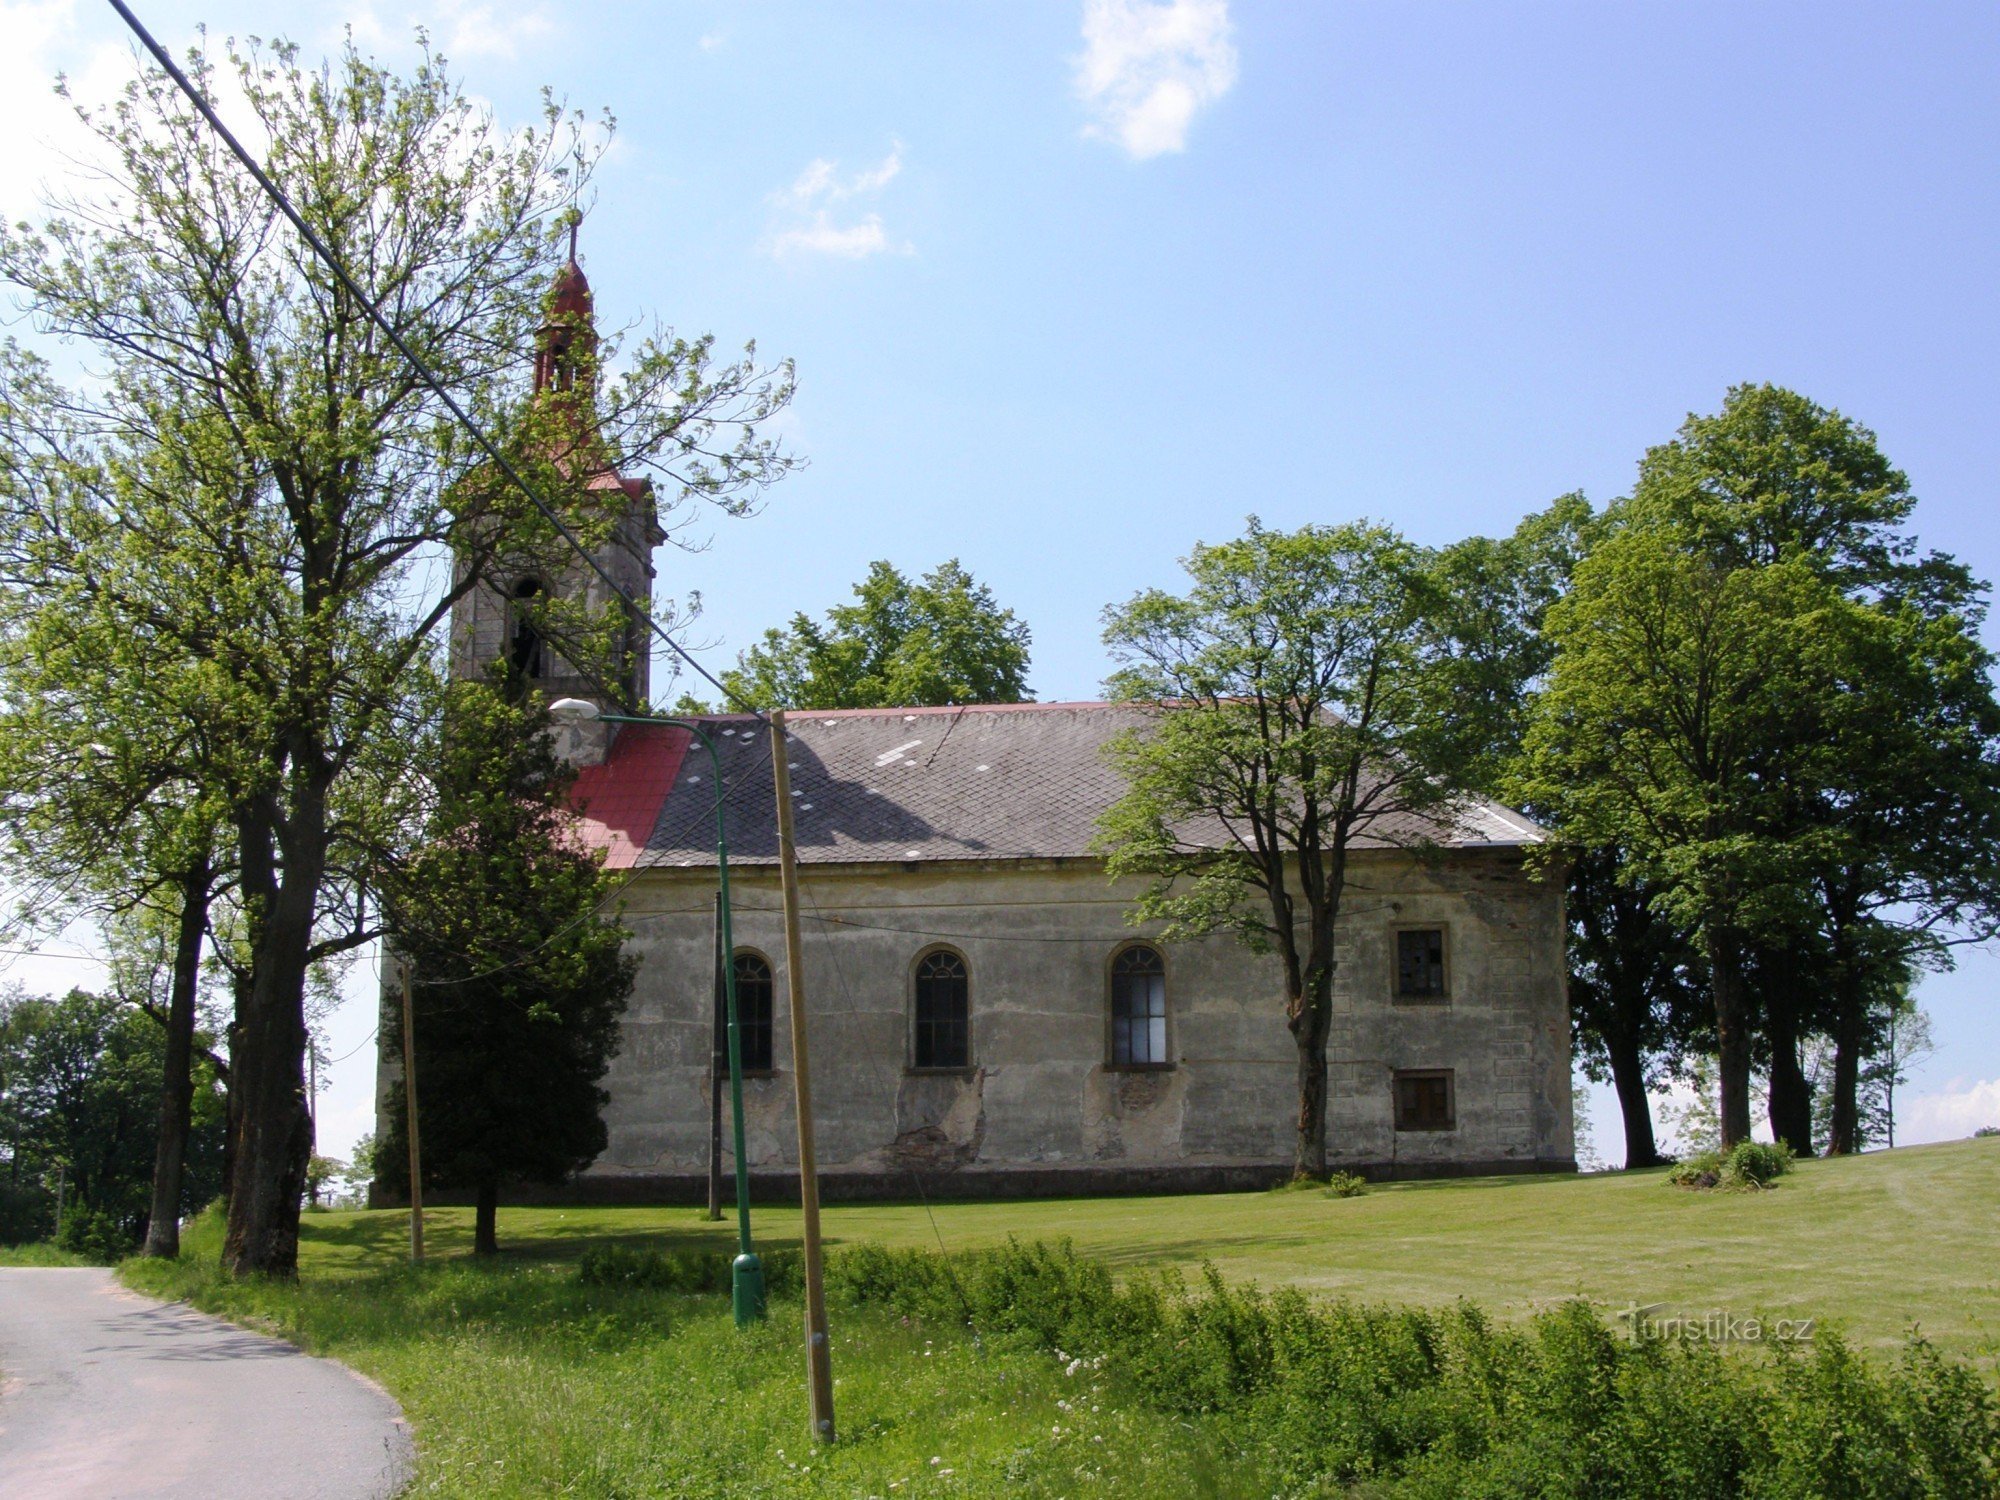 Nebeská Rybná - church of St. Philip and Jacob